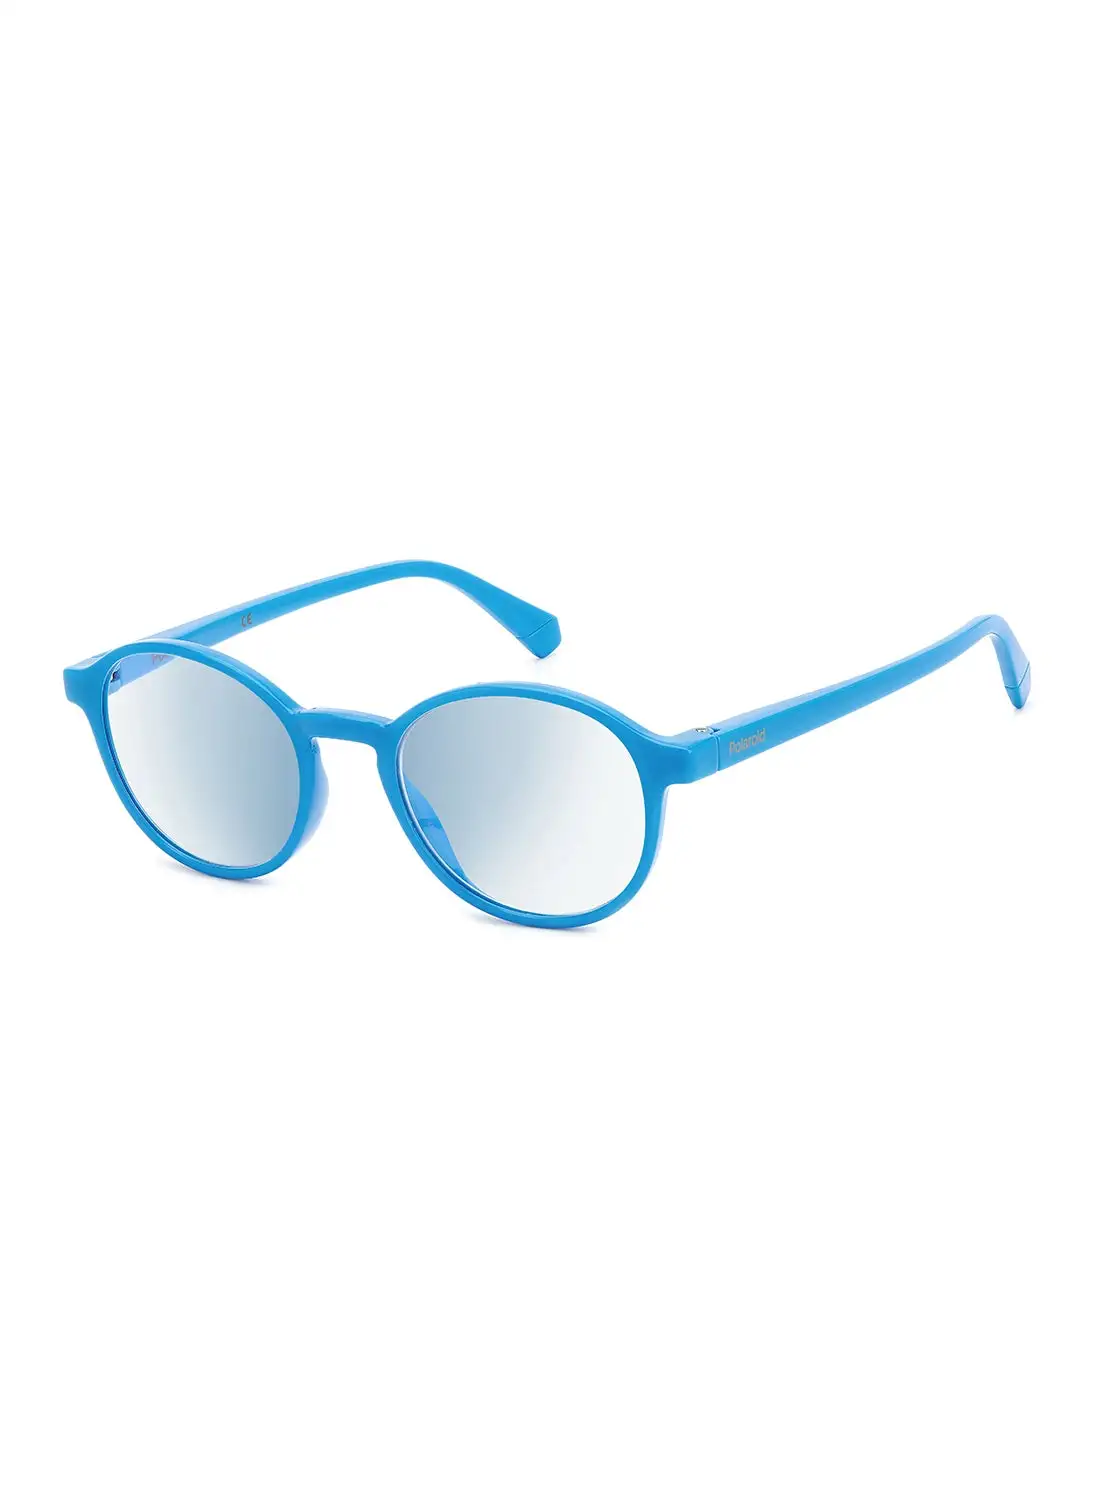 نظارات القراءة بولارويد للجنسين - Pld 0034/R/Bb Azure 48 - مقاس العدسة: 48 ملم